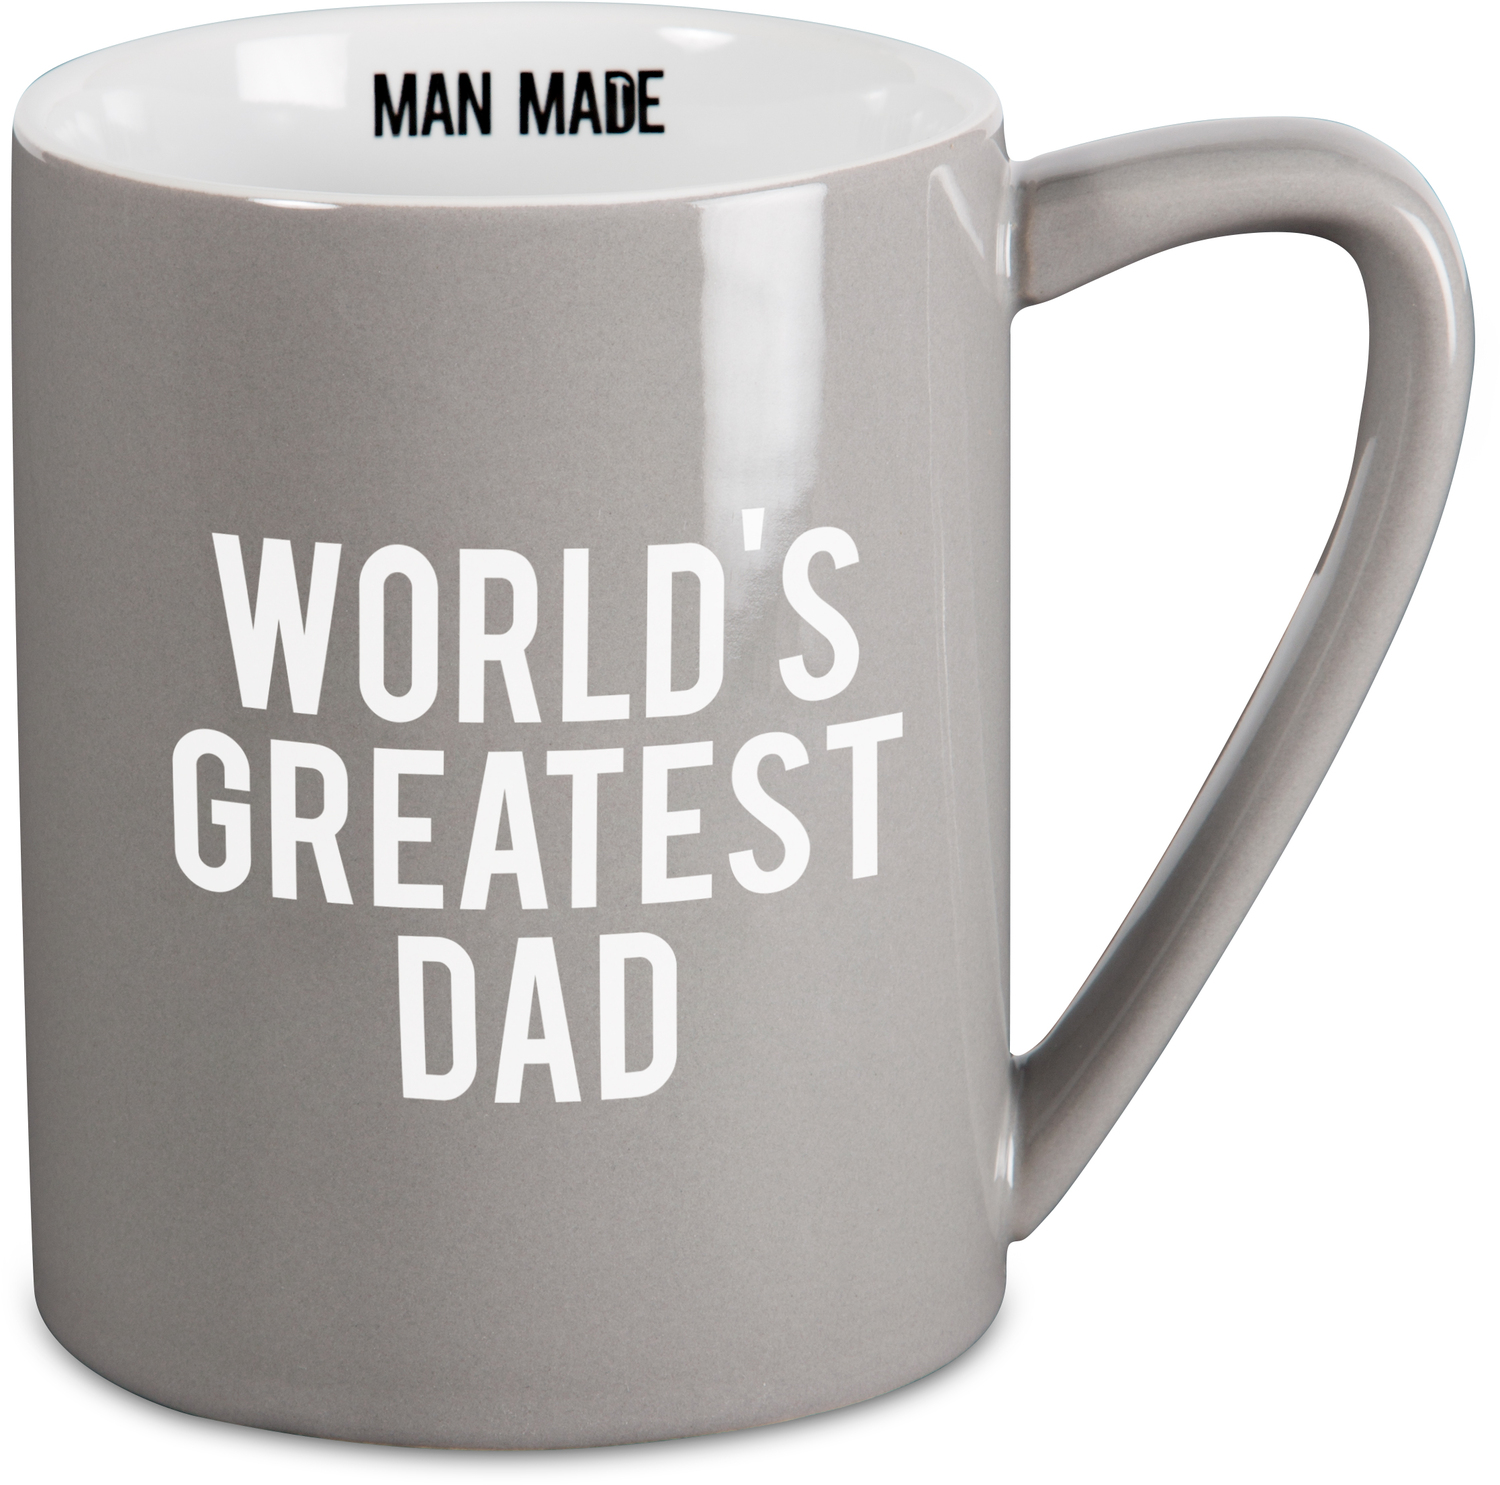 Greatest Dad by Man Made - Greatest Dad - 18 oz Mug